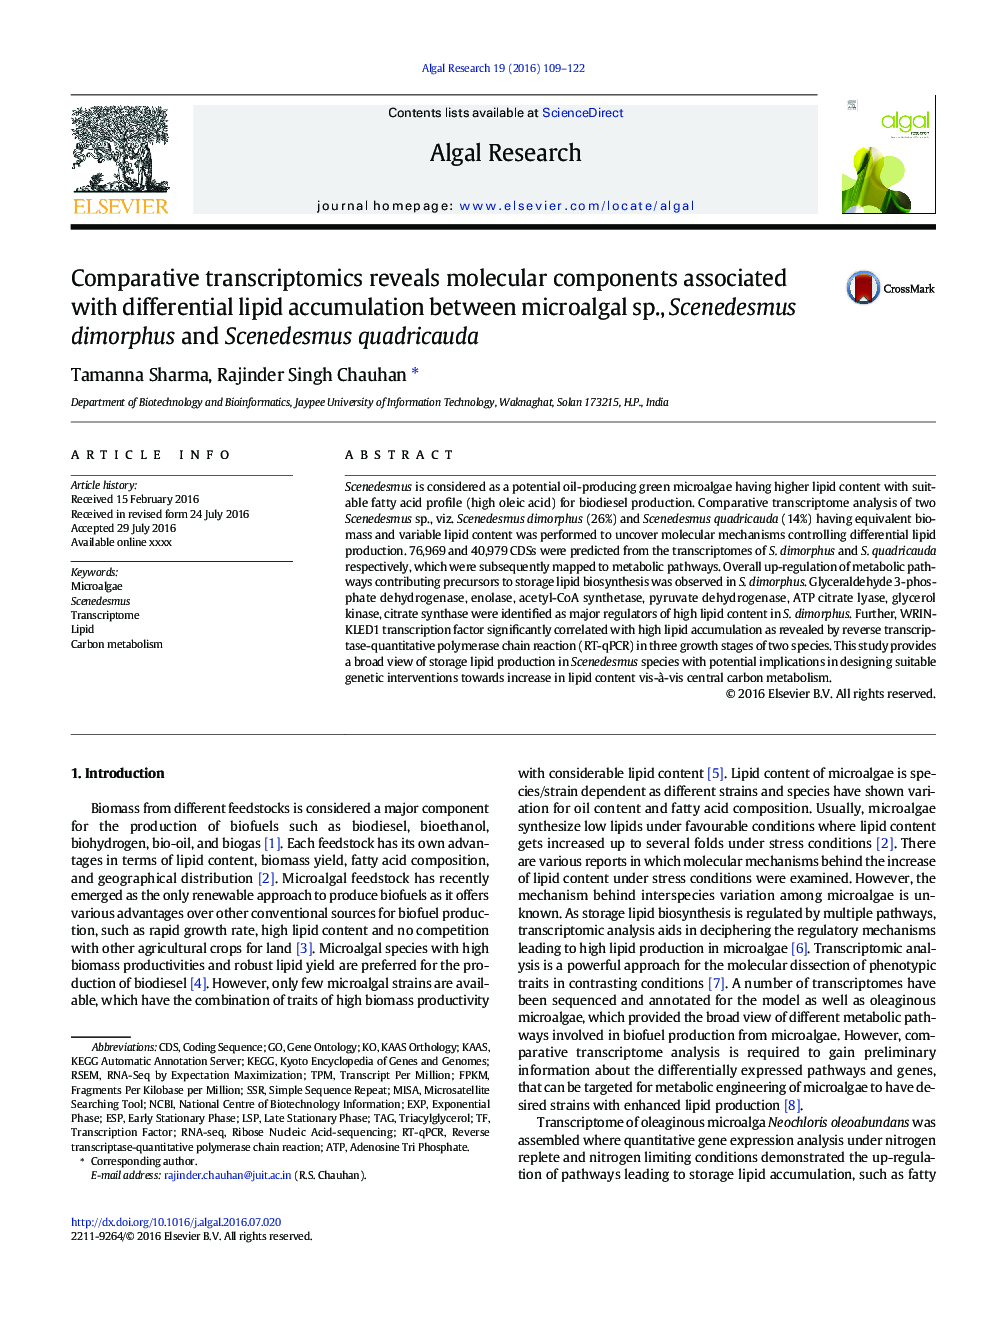 Comparative transcriptomics reveals molecular components associated with differential lipid accumulation between microalgal sp., Scenedesmus dimorphus and Scenedesmus quadricauda